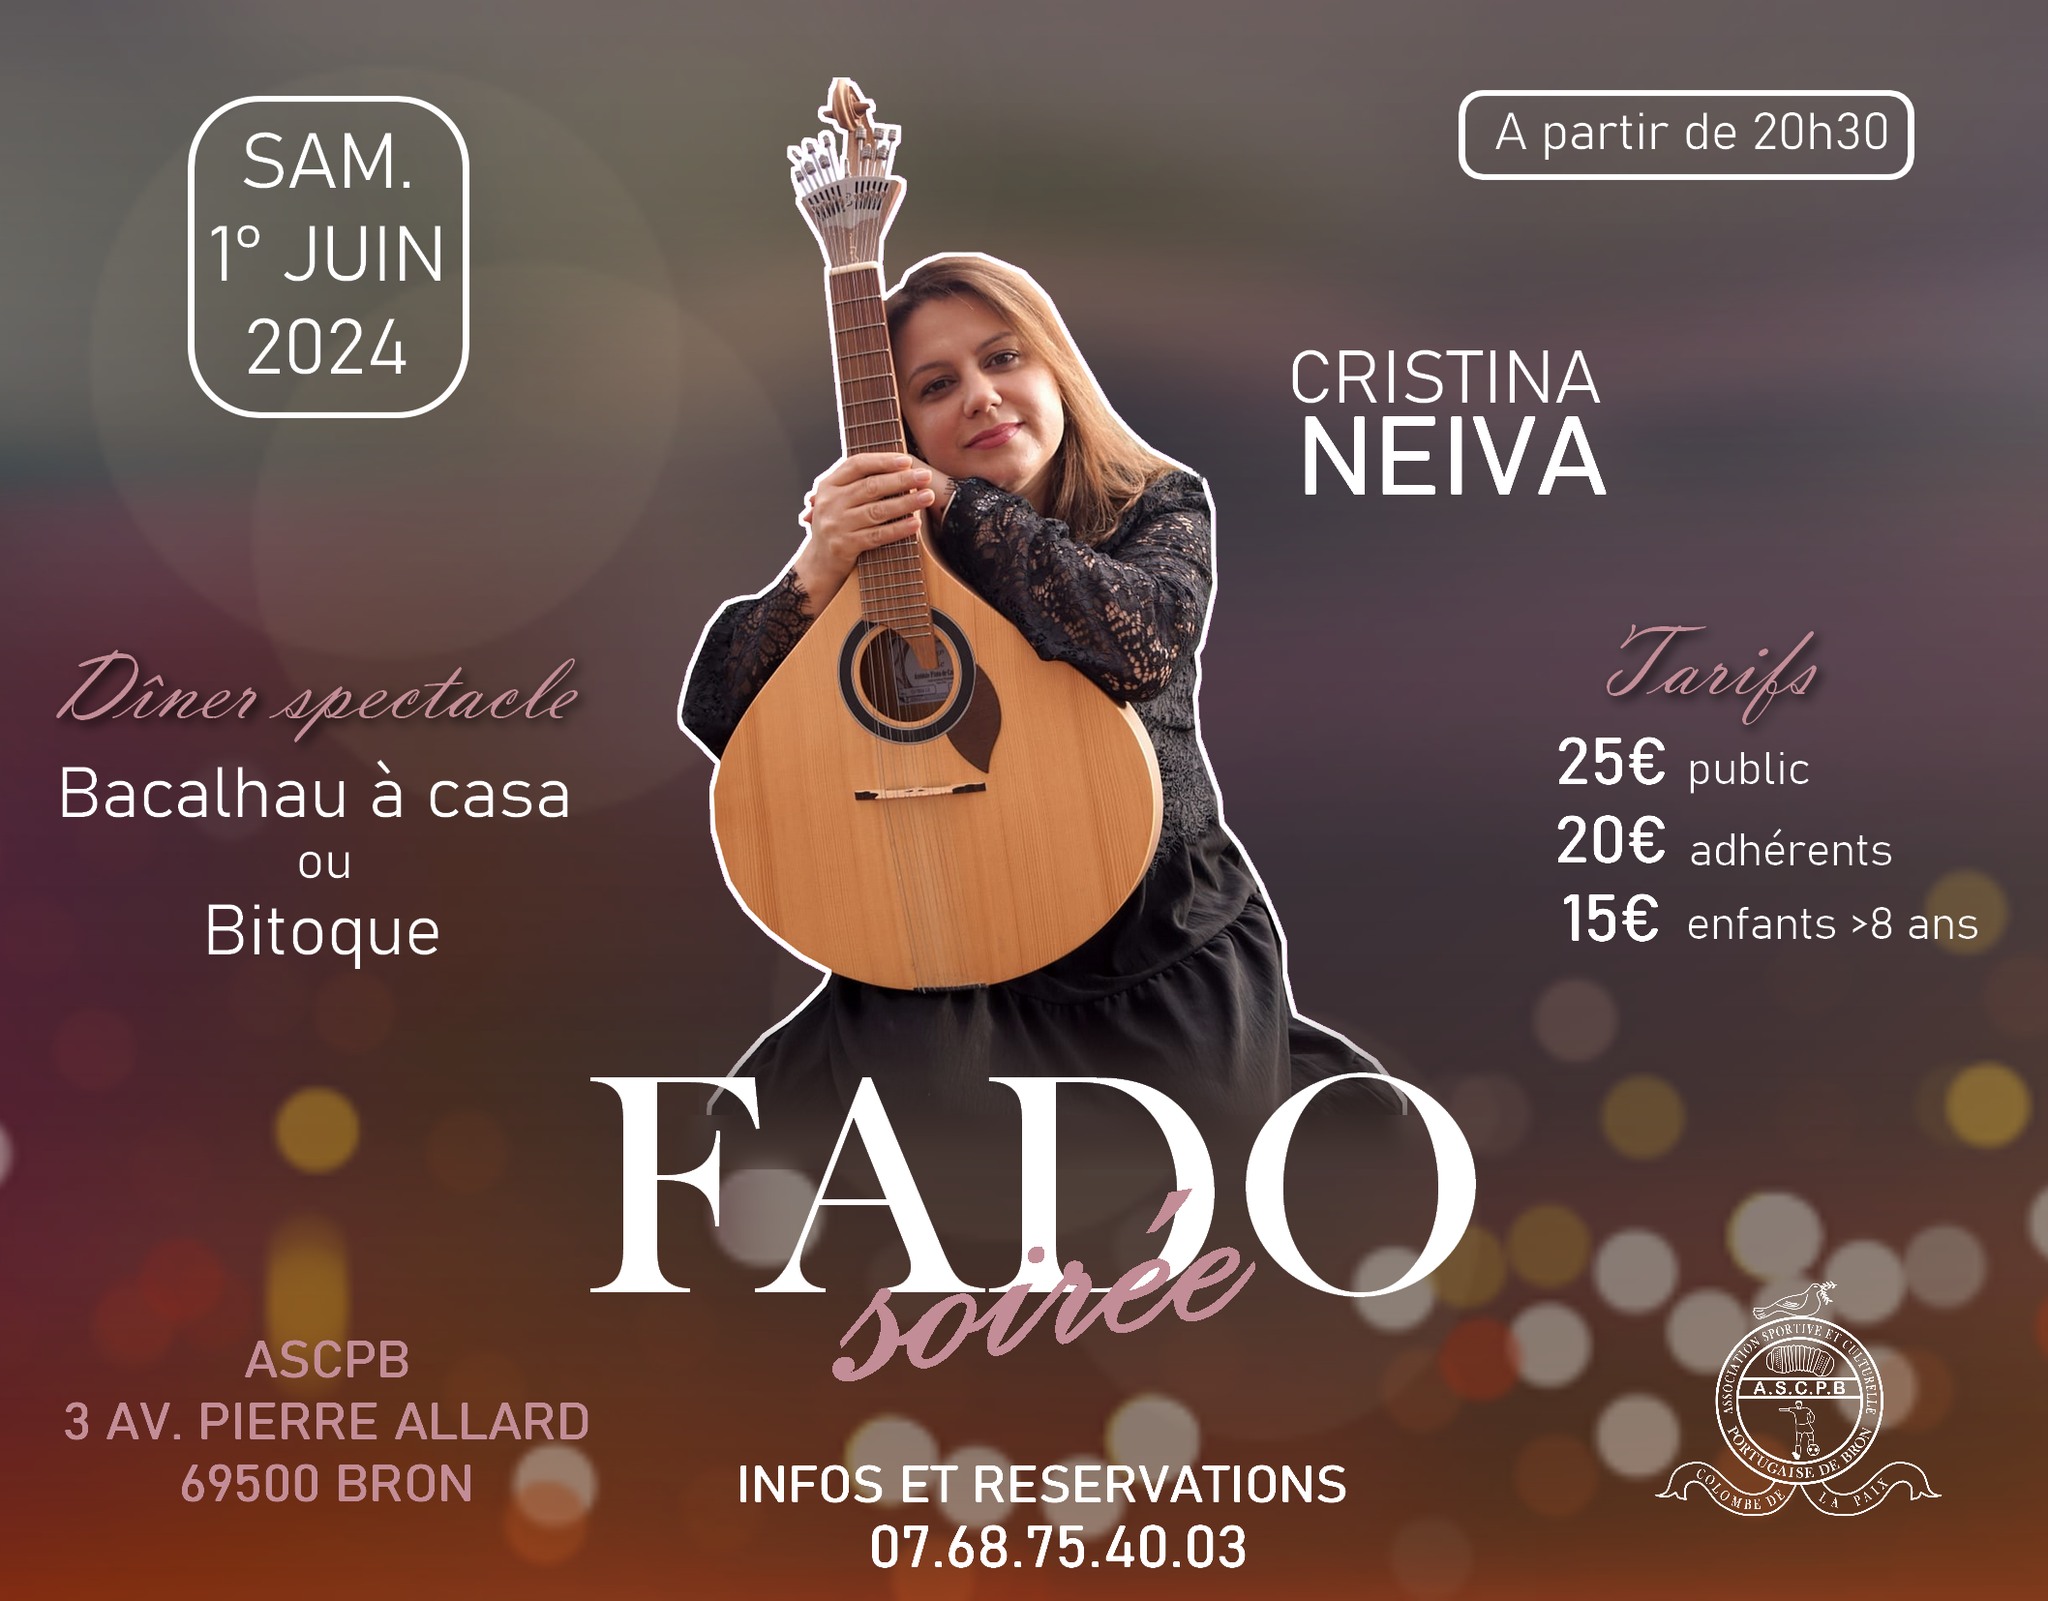 Noite de Fado com Fadista Cristina Neiva - 01/06/2024 - 20H30, na Sede ASCPB Bron